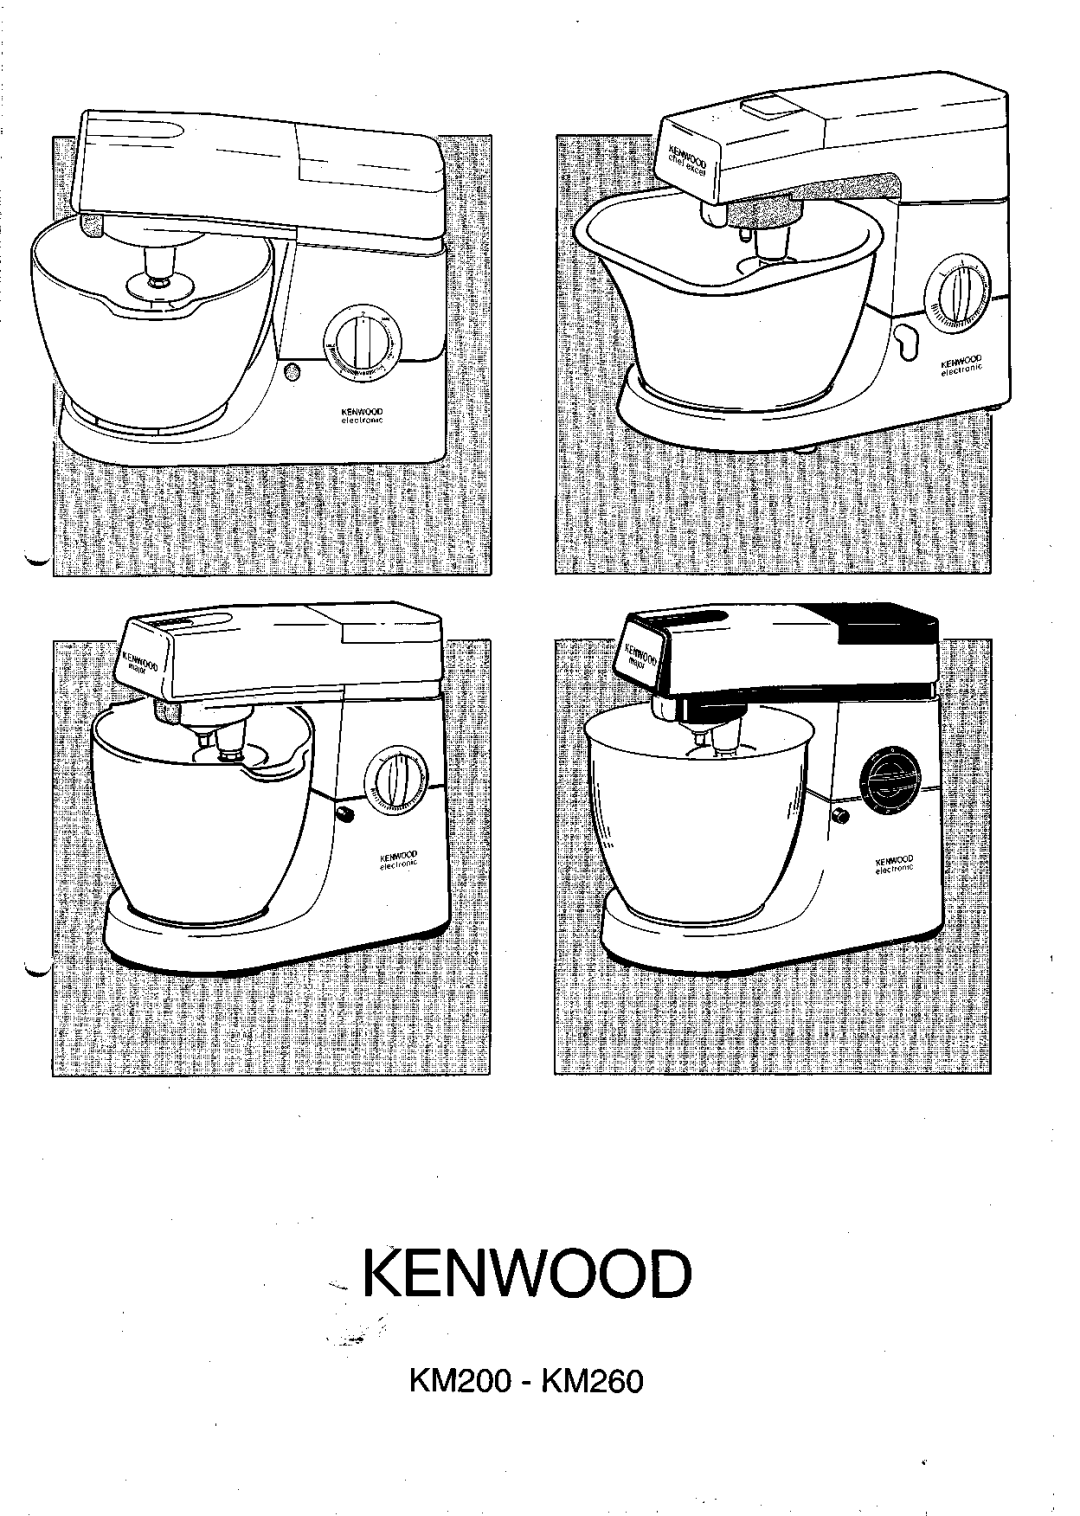 Kenwood manual KM200 - KM260, Kenwood 